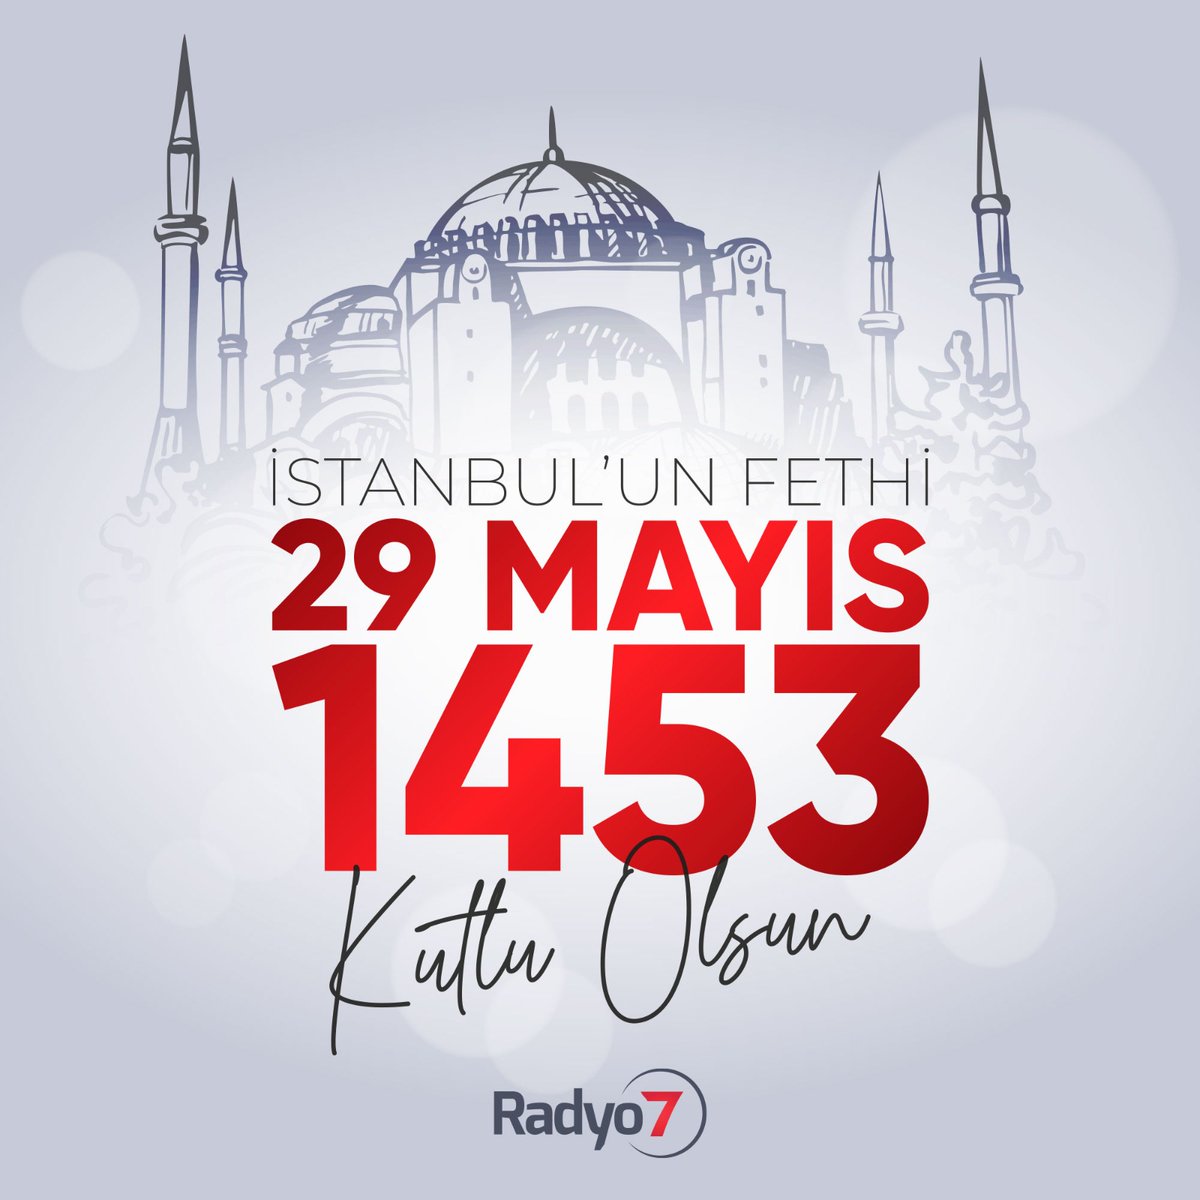 Bir çağı açıp bir çağı kapatan İstanbul'un Fethi’nin 570. sene-i devriyesi kutlu olsun.

Fatih Sultan Mehmet Han ve bu kutlu yolda mücadele eden aziz şehitlerimizi rahmetle anıyoruz. 

#istanbulunfethi